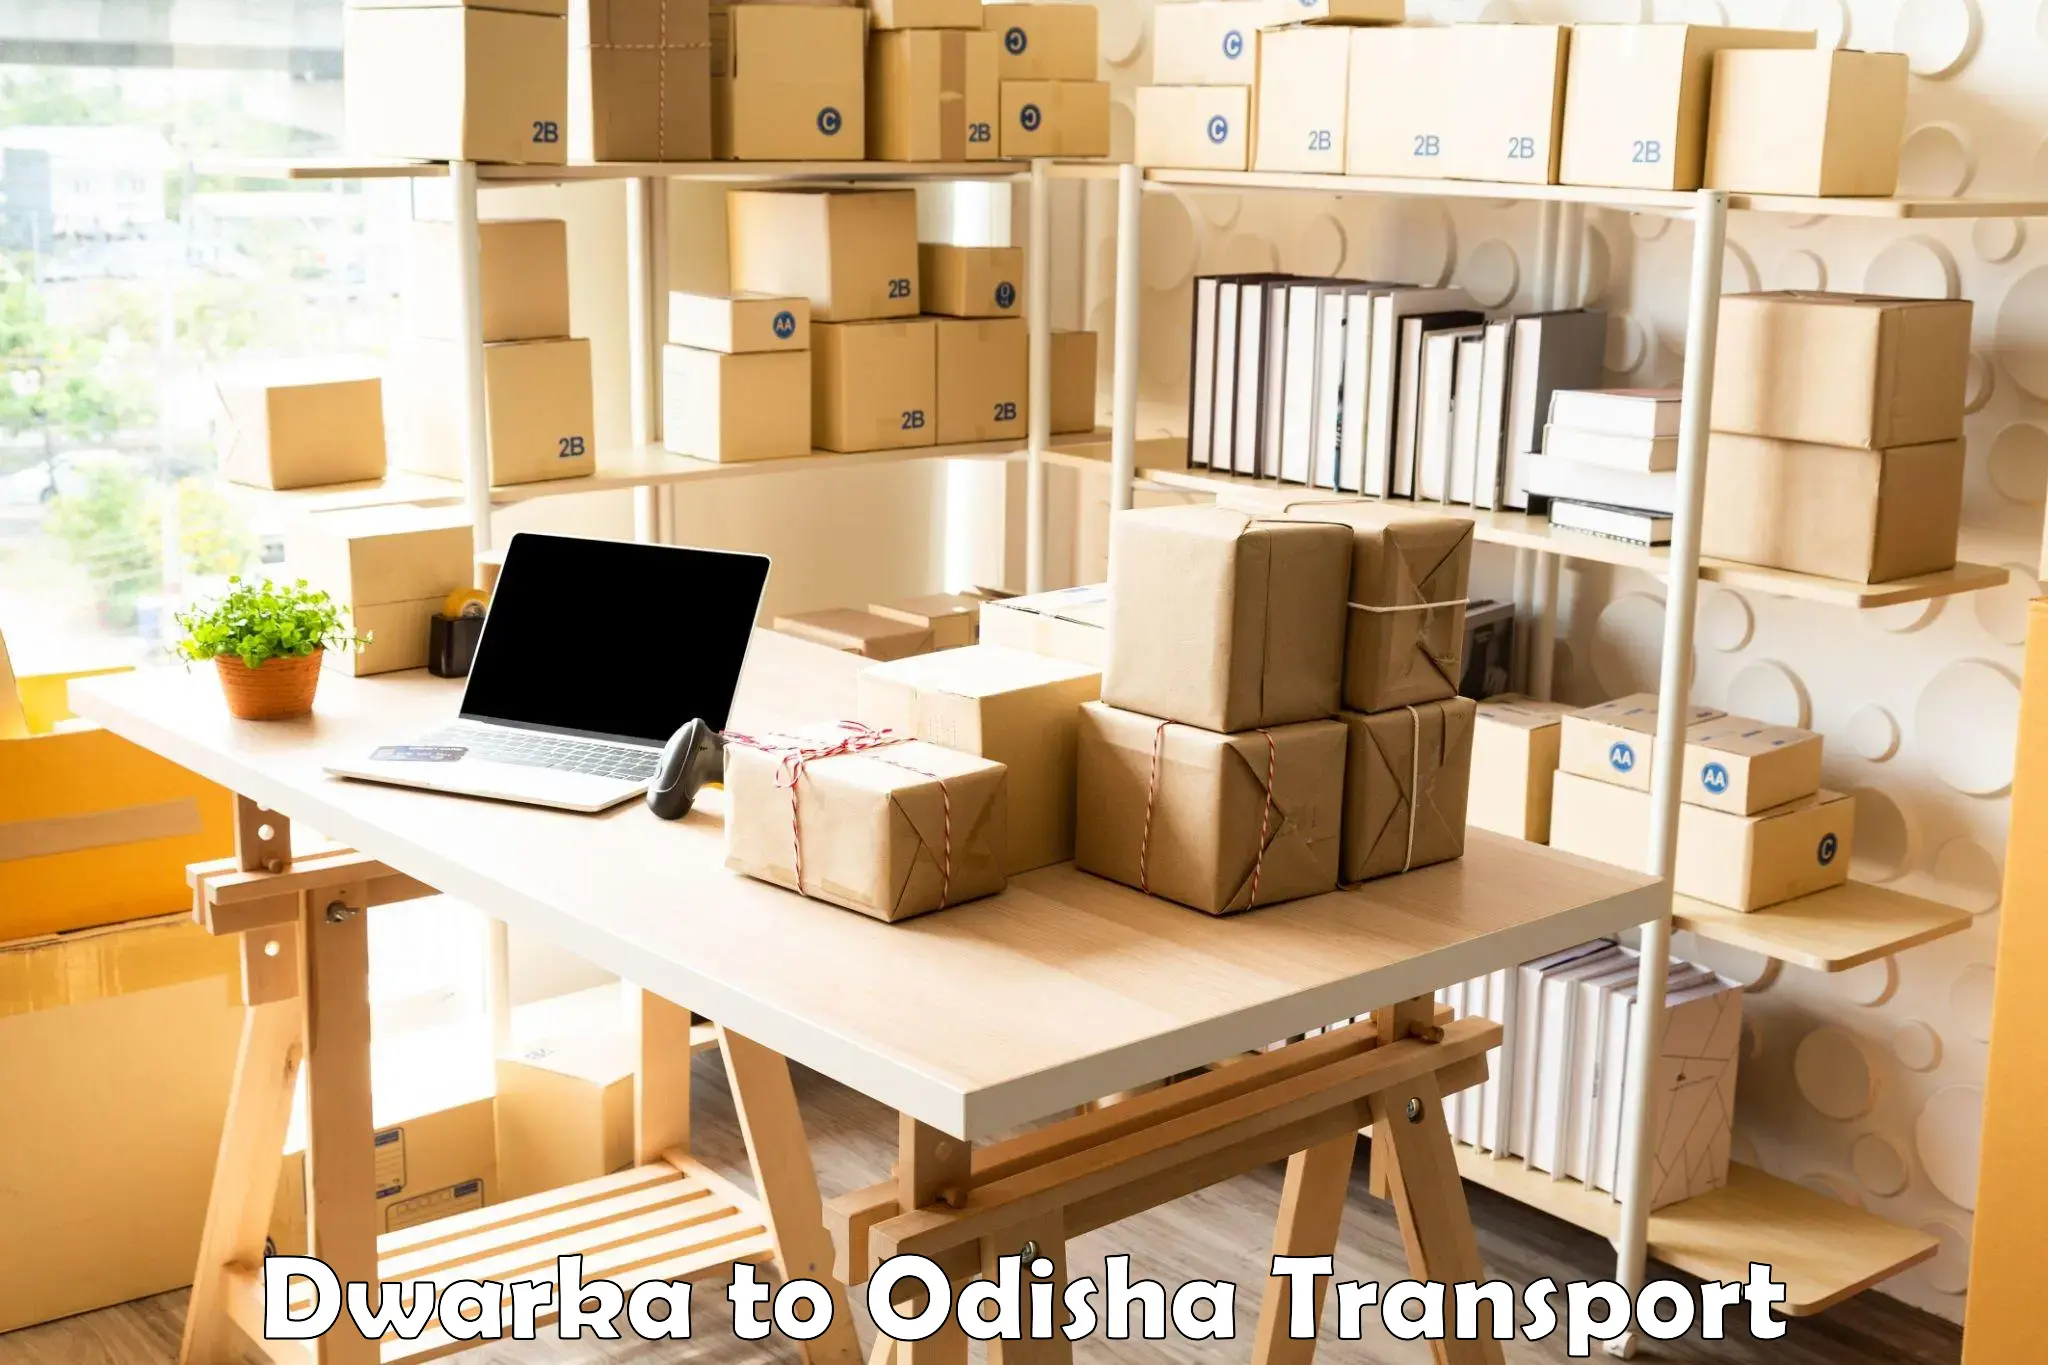 Daily parcel service transport in Dwarka to Binjharpur